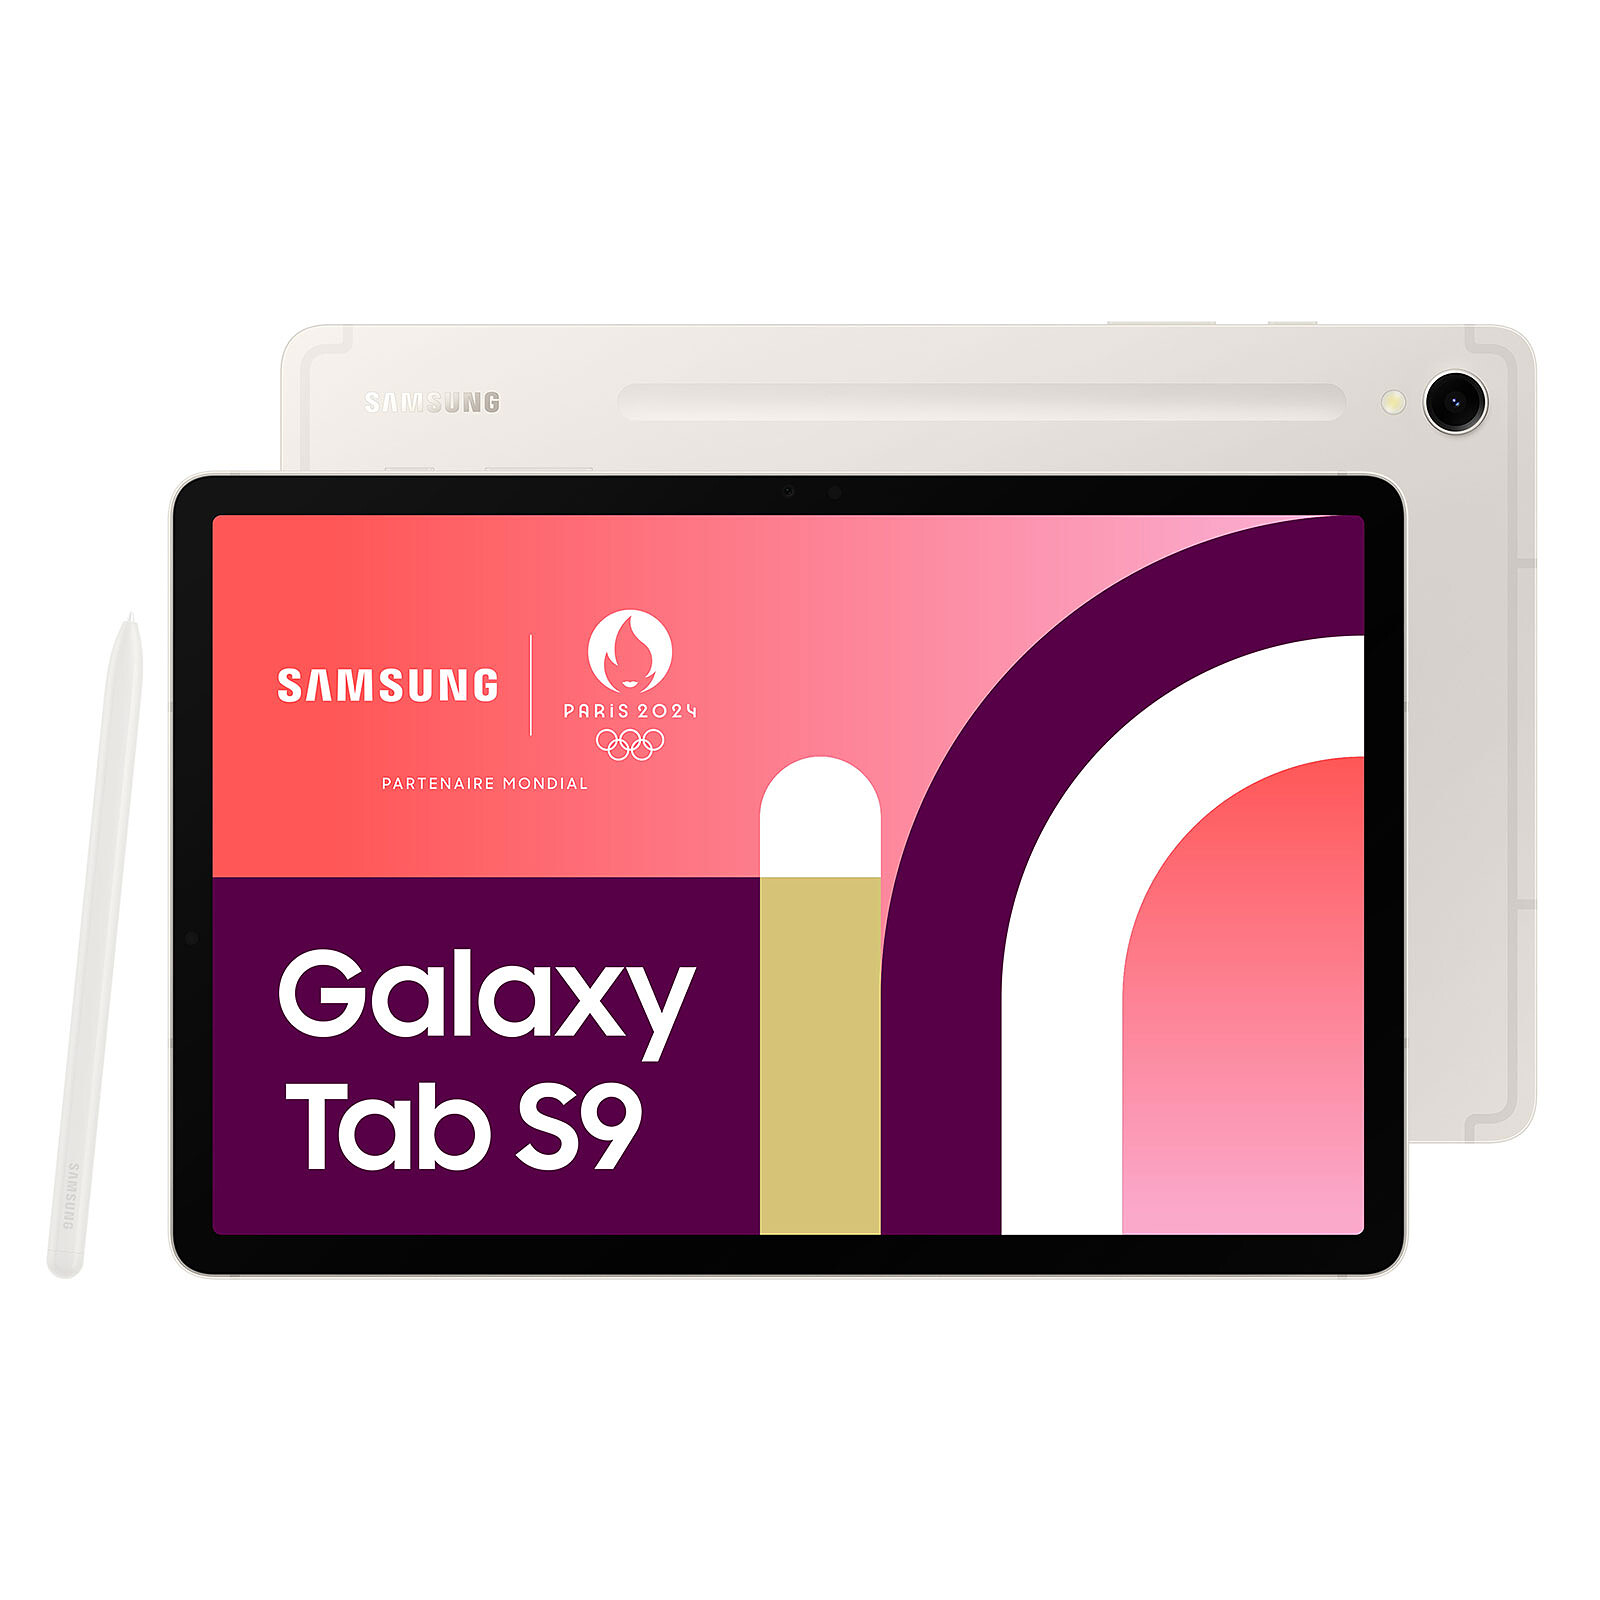 Tablette Samsung Galaxy Tab S8 Ecran 11 pouces Mémoire 128 Go Ram